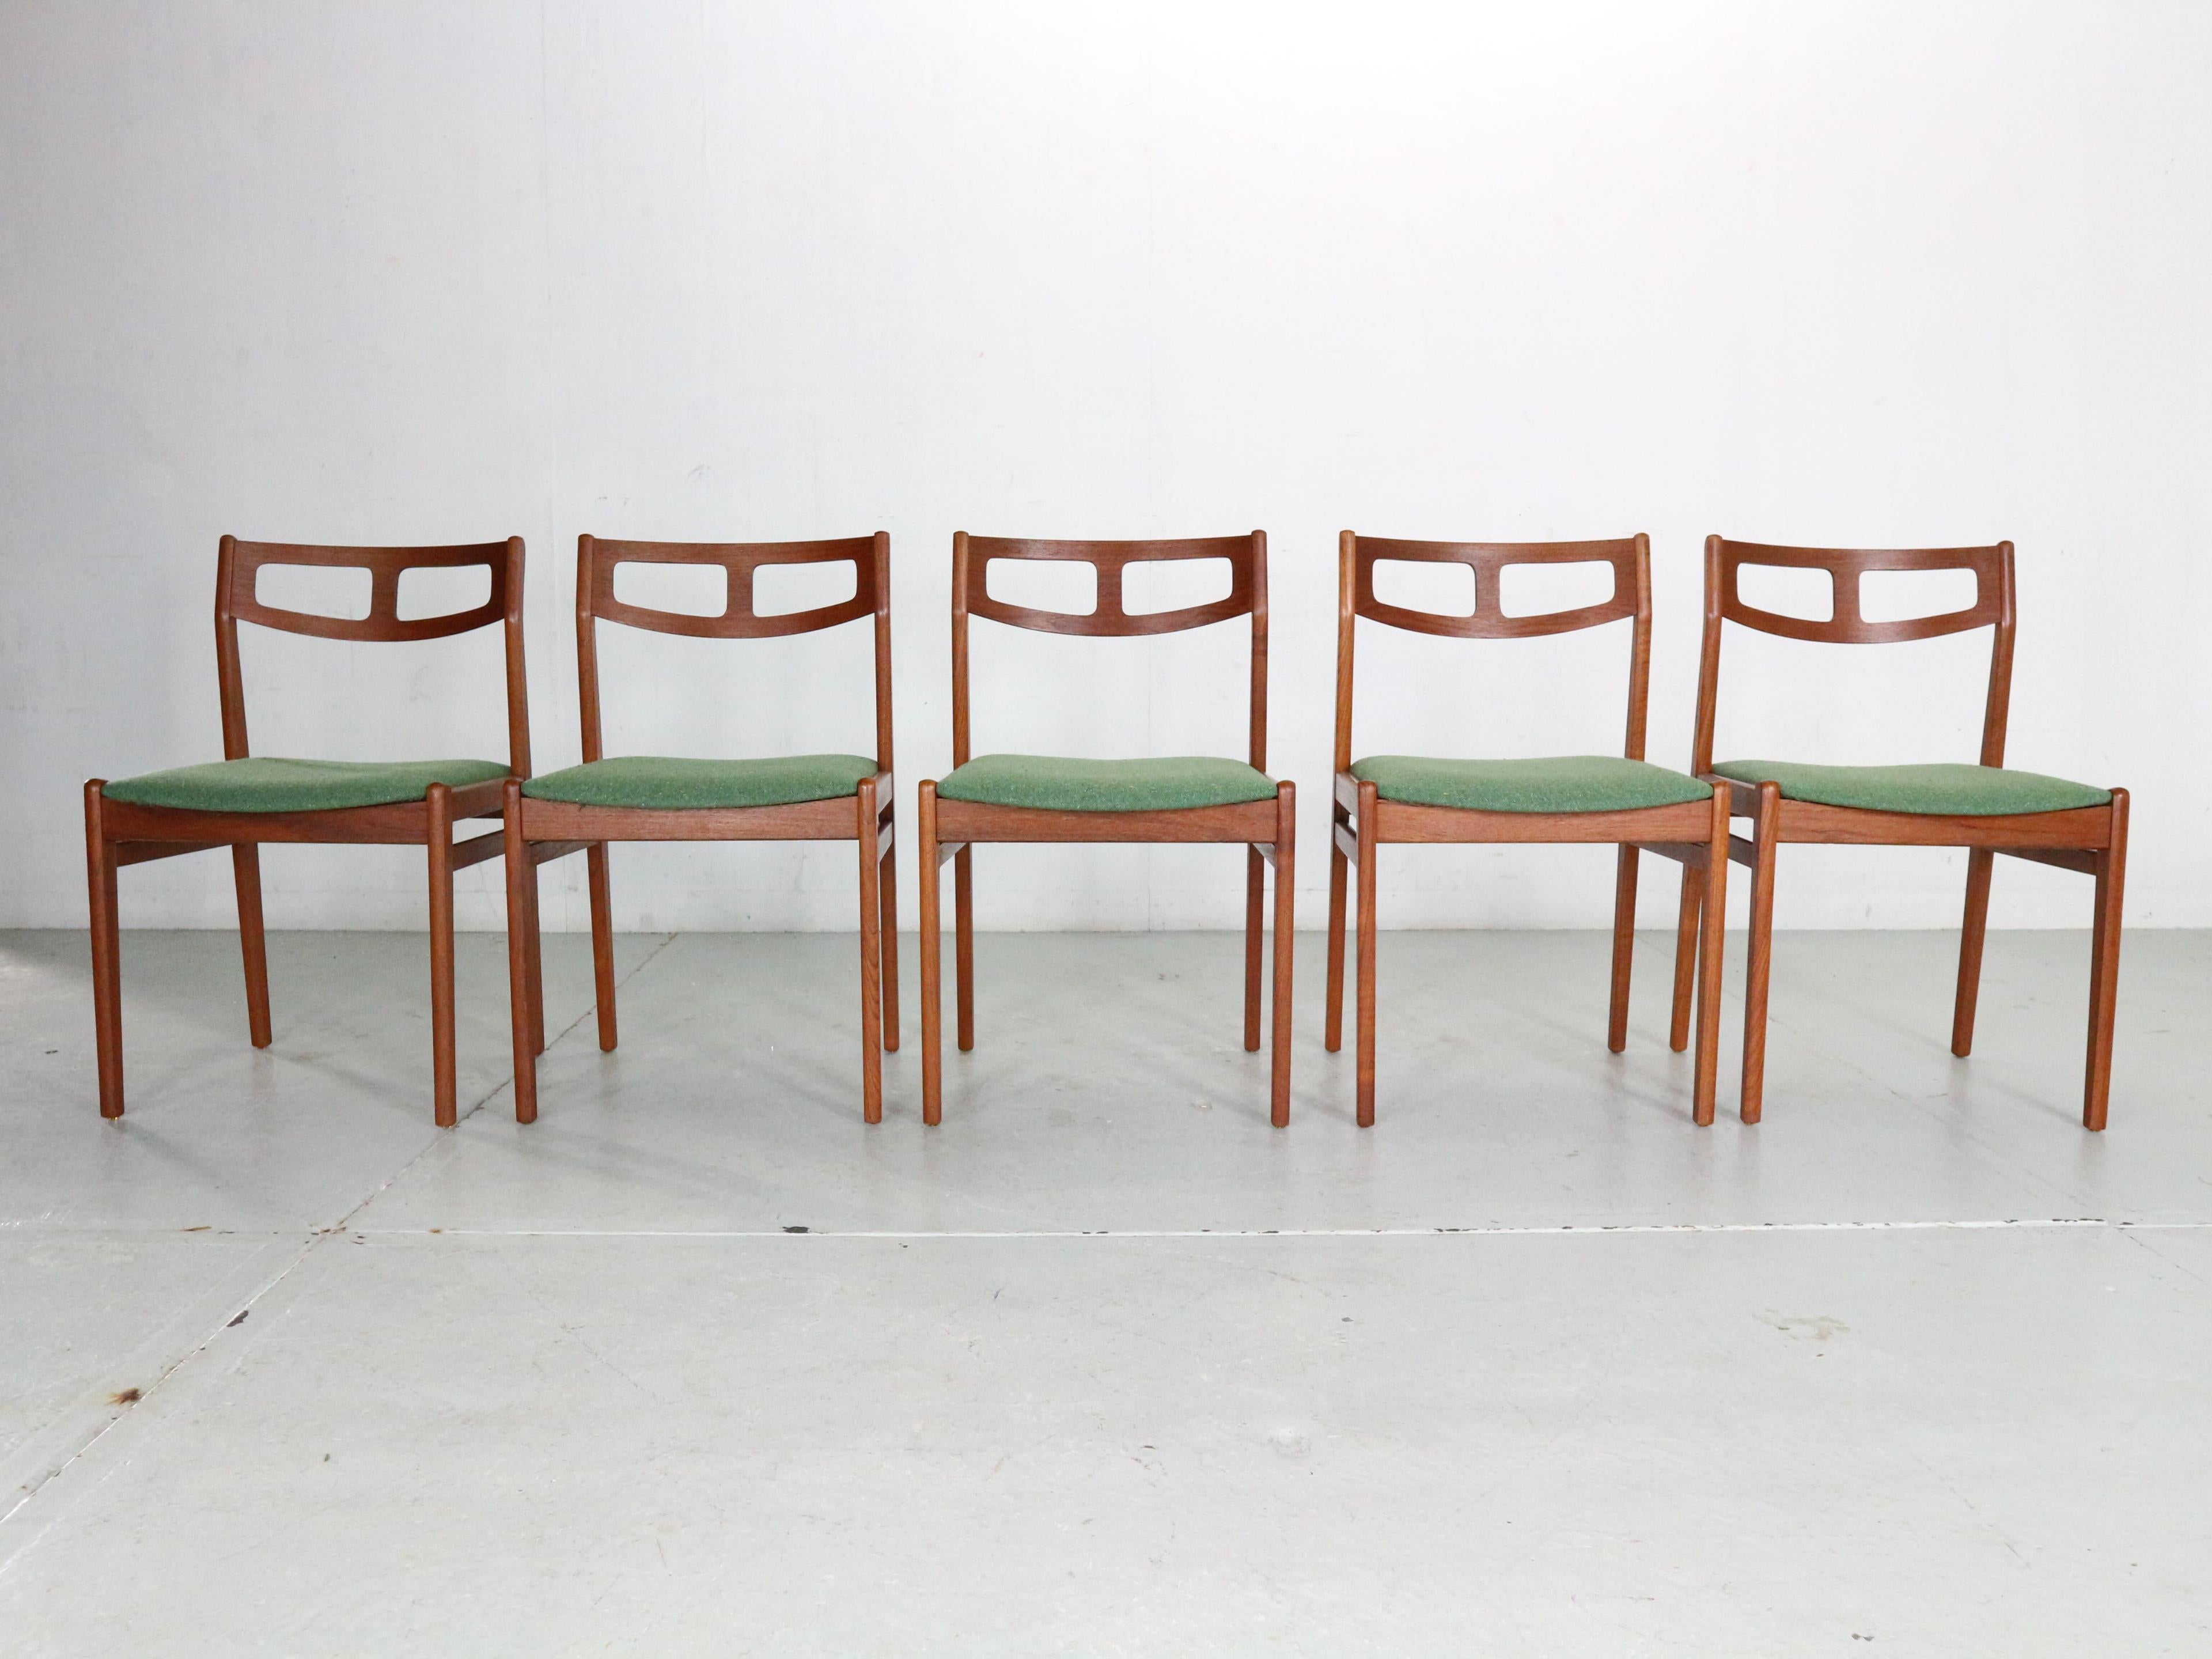 Ensemble moderne scandinave d'époque composé de 5 chaises de salle à manger fabriquées dans les années 1960, Danemark.
Les chaises ont été nouvellement retapissées avec un tissu d'ameublement en laine verte. 
Le cadre est fabriqué en bois de teck